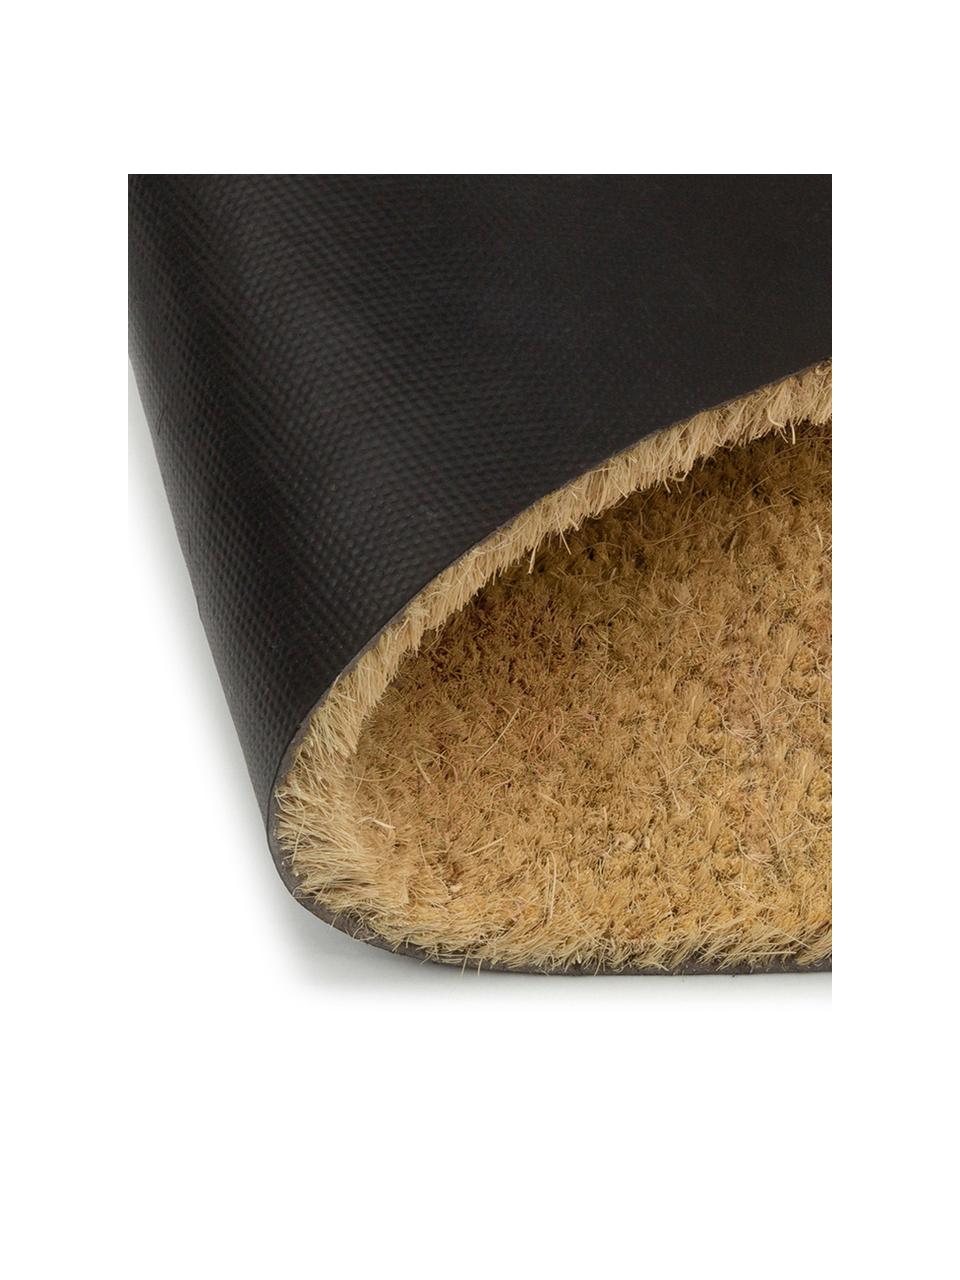 Fußmatte Oh Hello, Oberseite: Kokosfaser, Unterseite: PVC, Beige, Grau, 40 x 60 cm